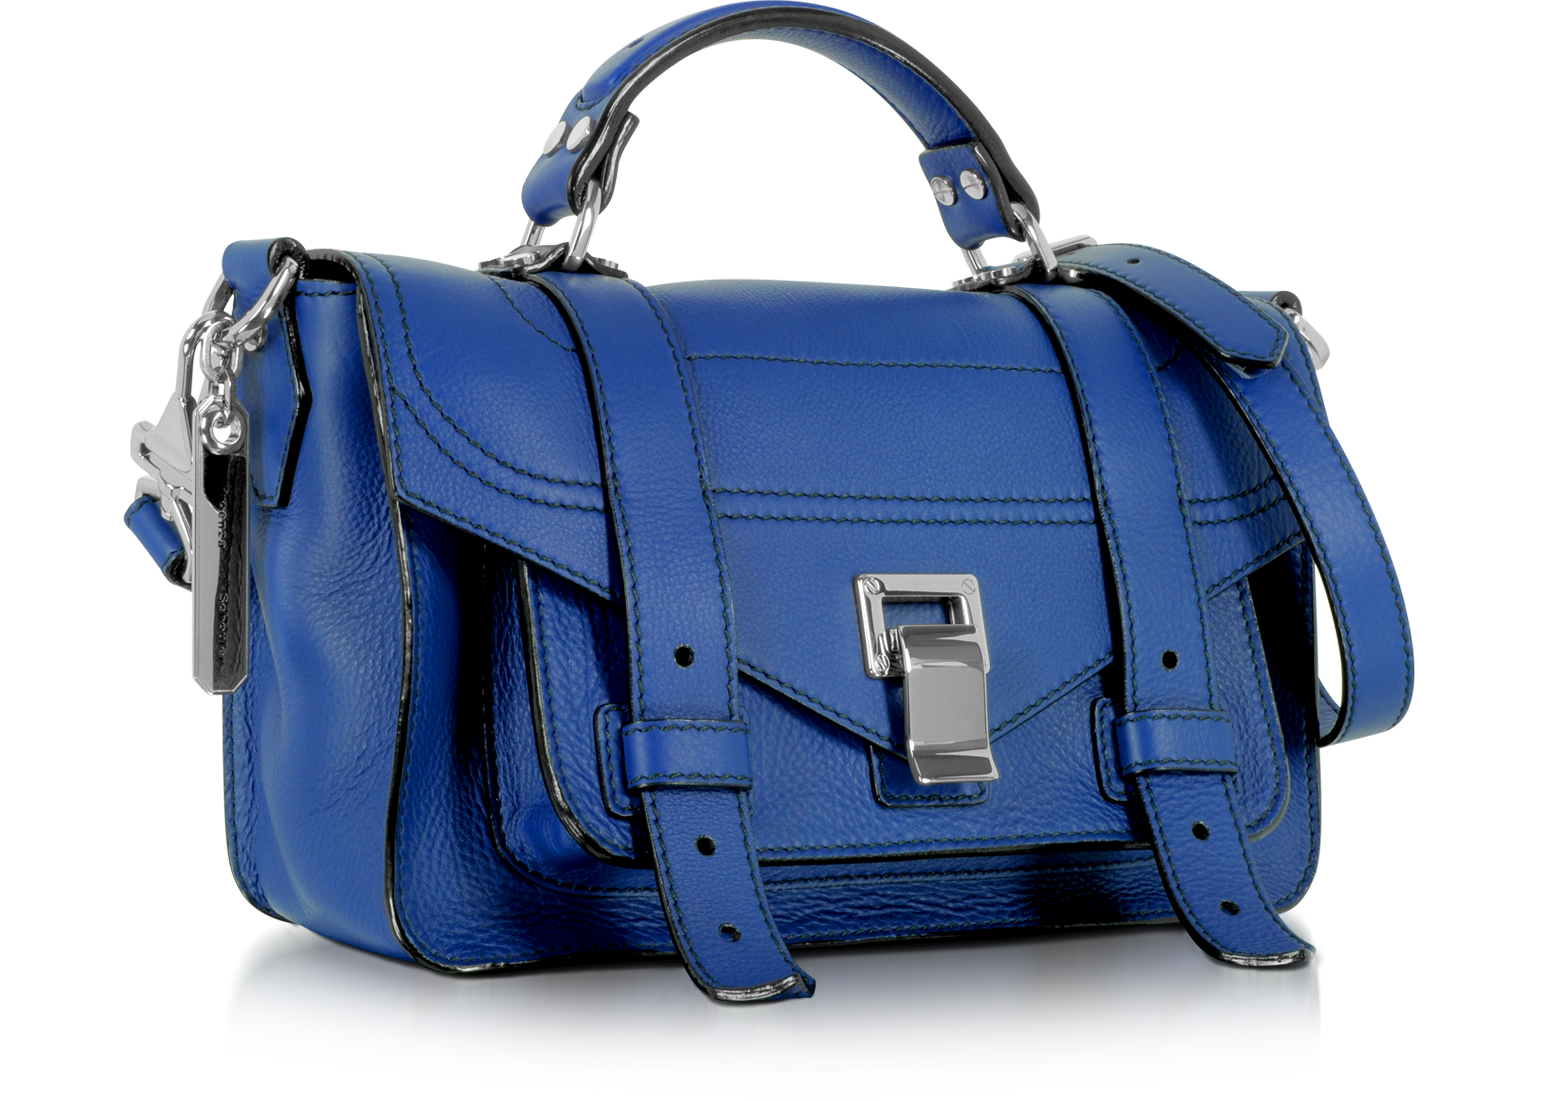 Proenza Schouler PS1+ Tiny Lapis Leather Flap Handbag at FORZIERI